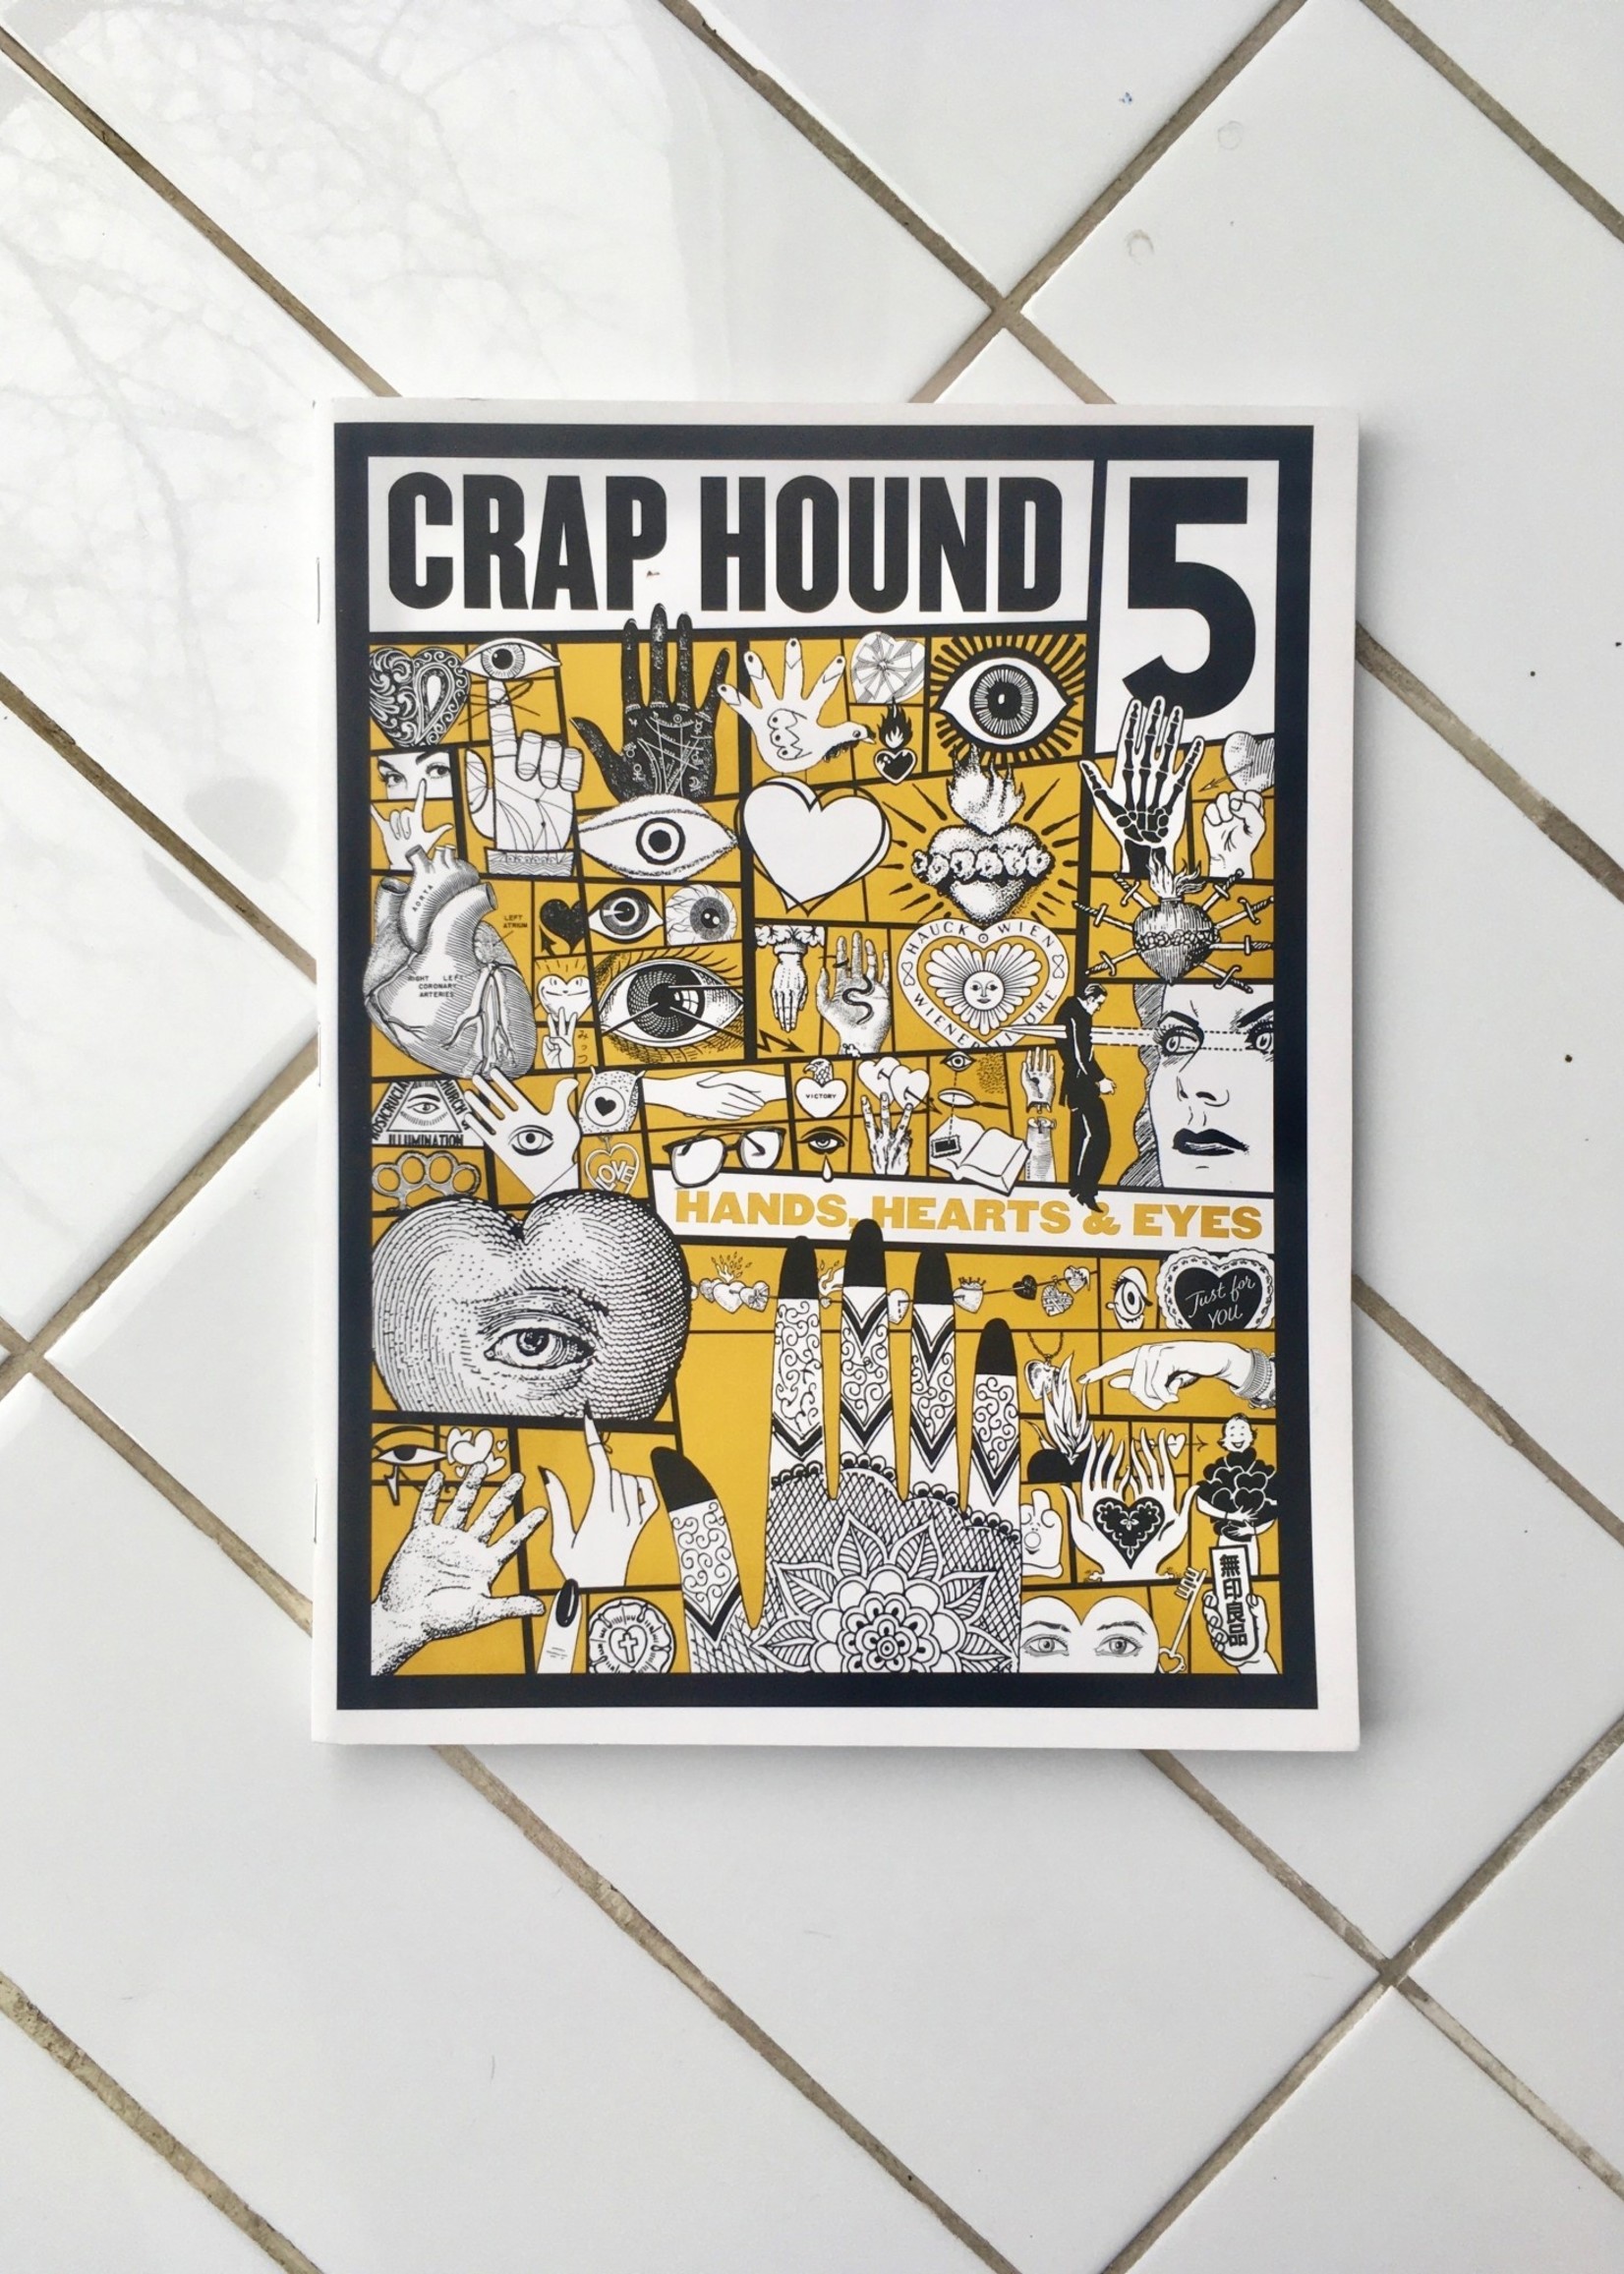 Sean Tejaratchi Magazine  "Crap Hound"